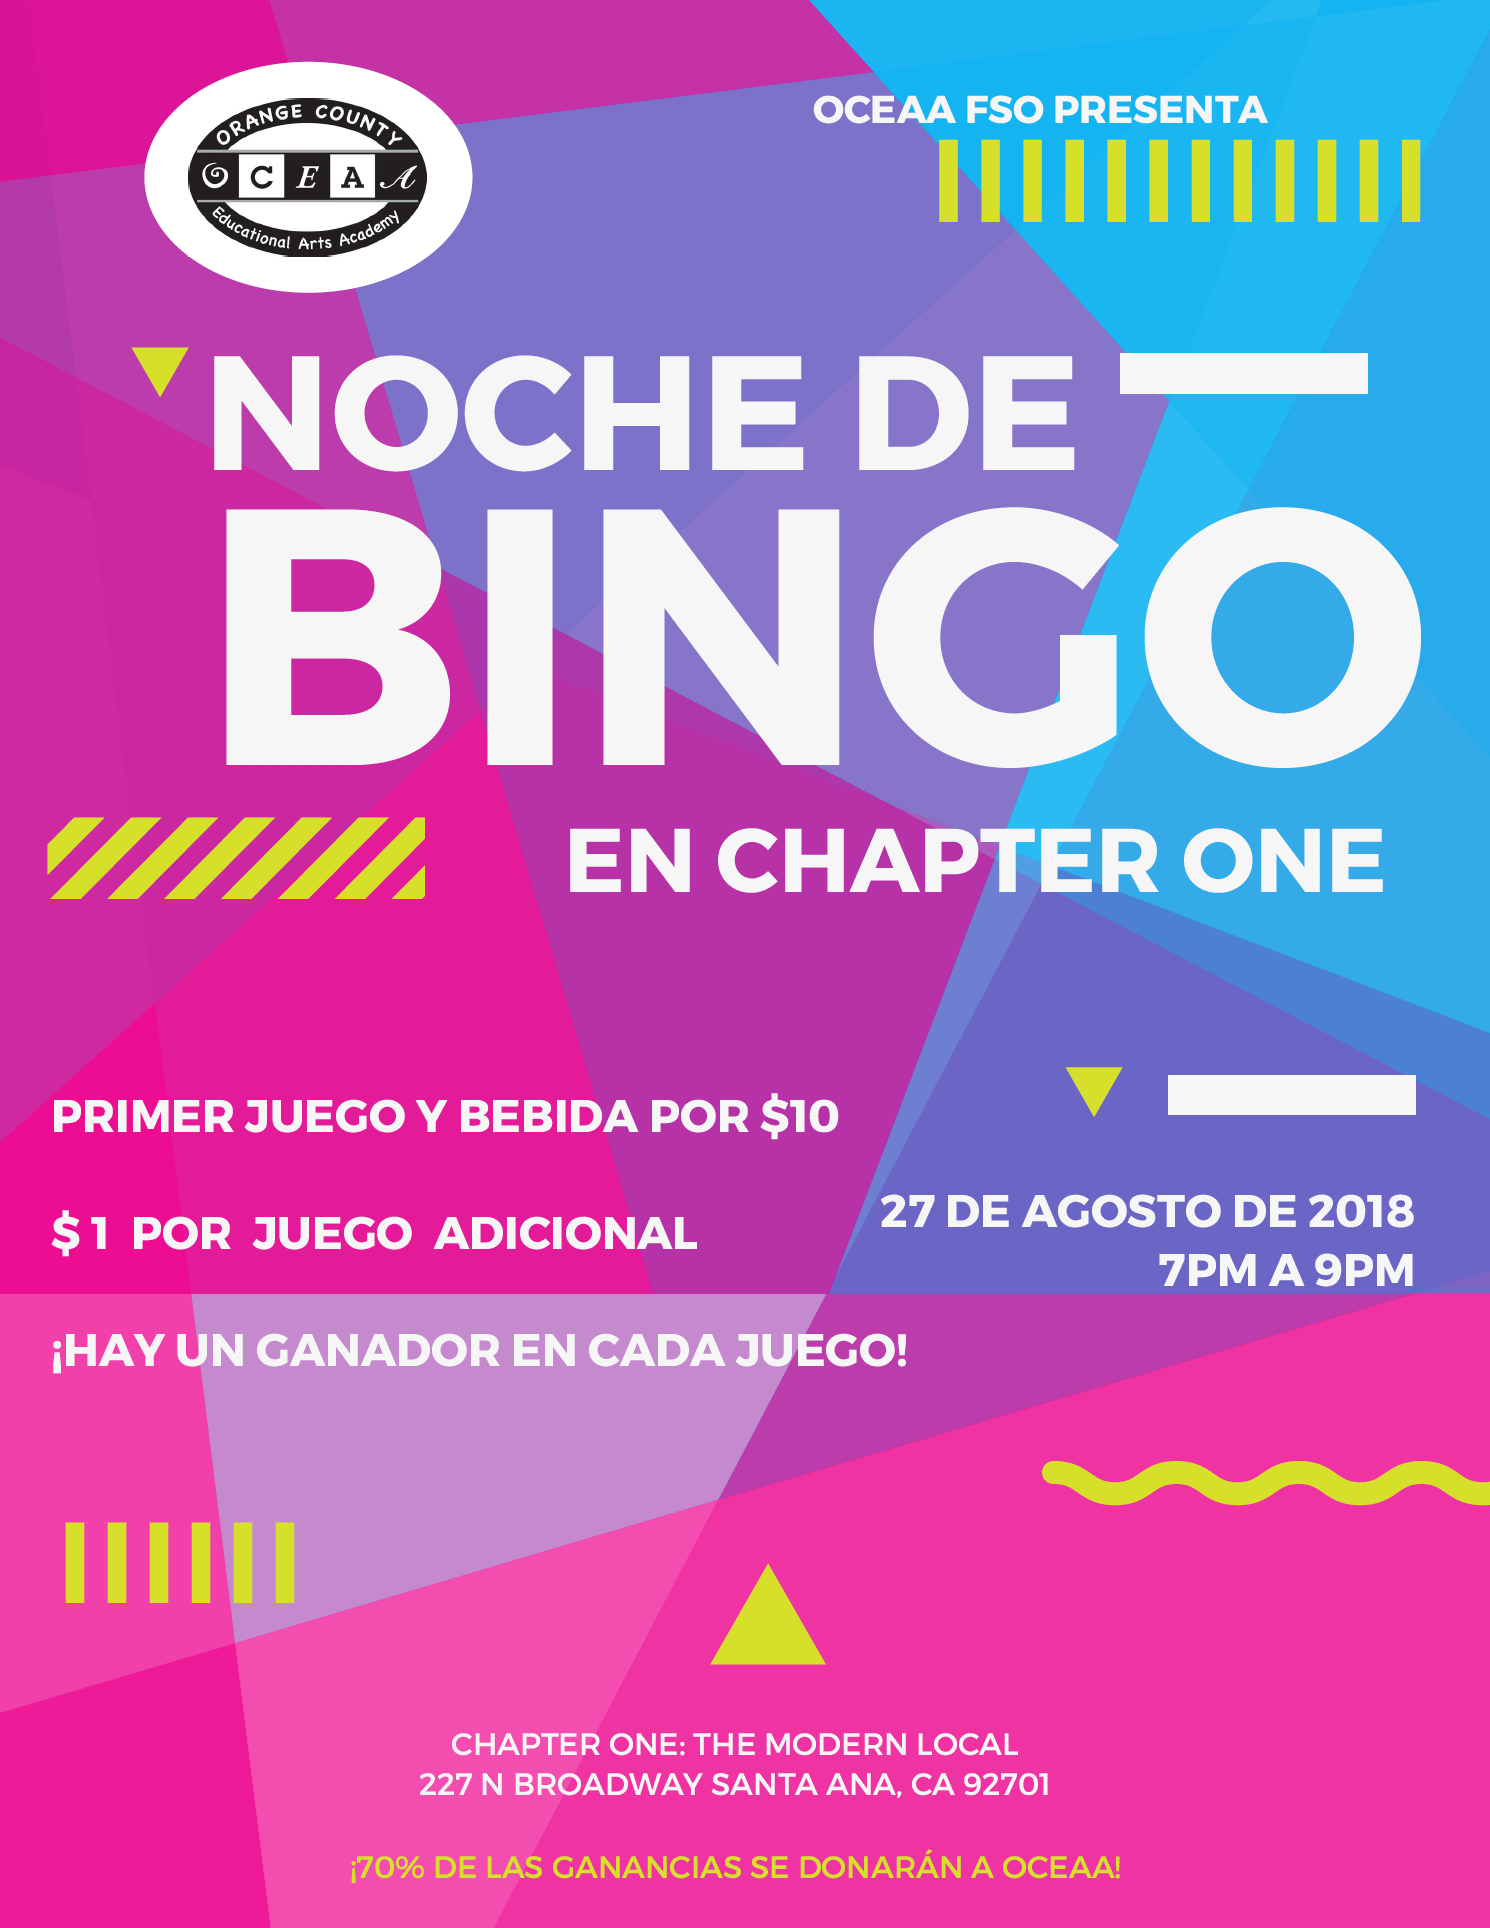 Noche de bingo para una escuela charter en santa ana